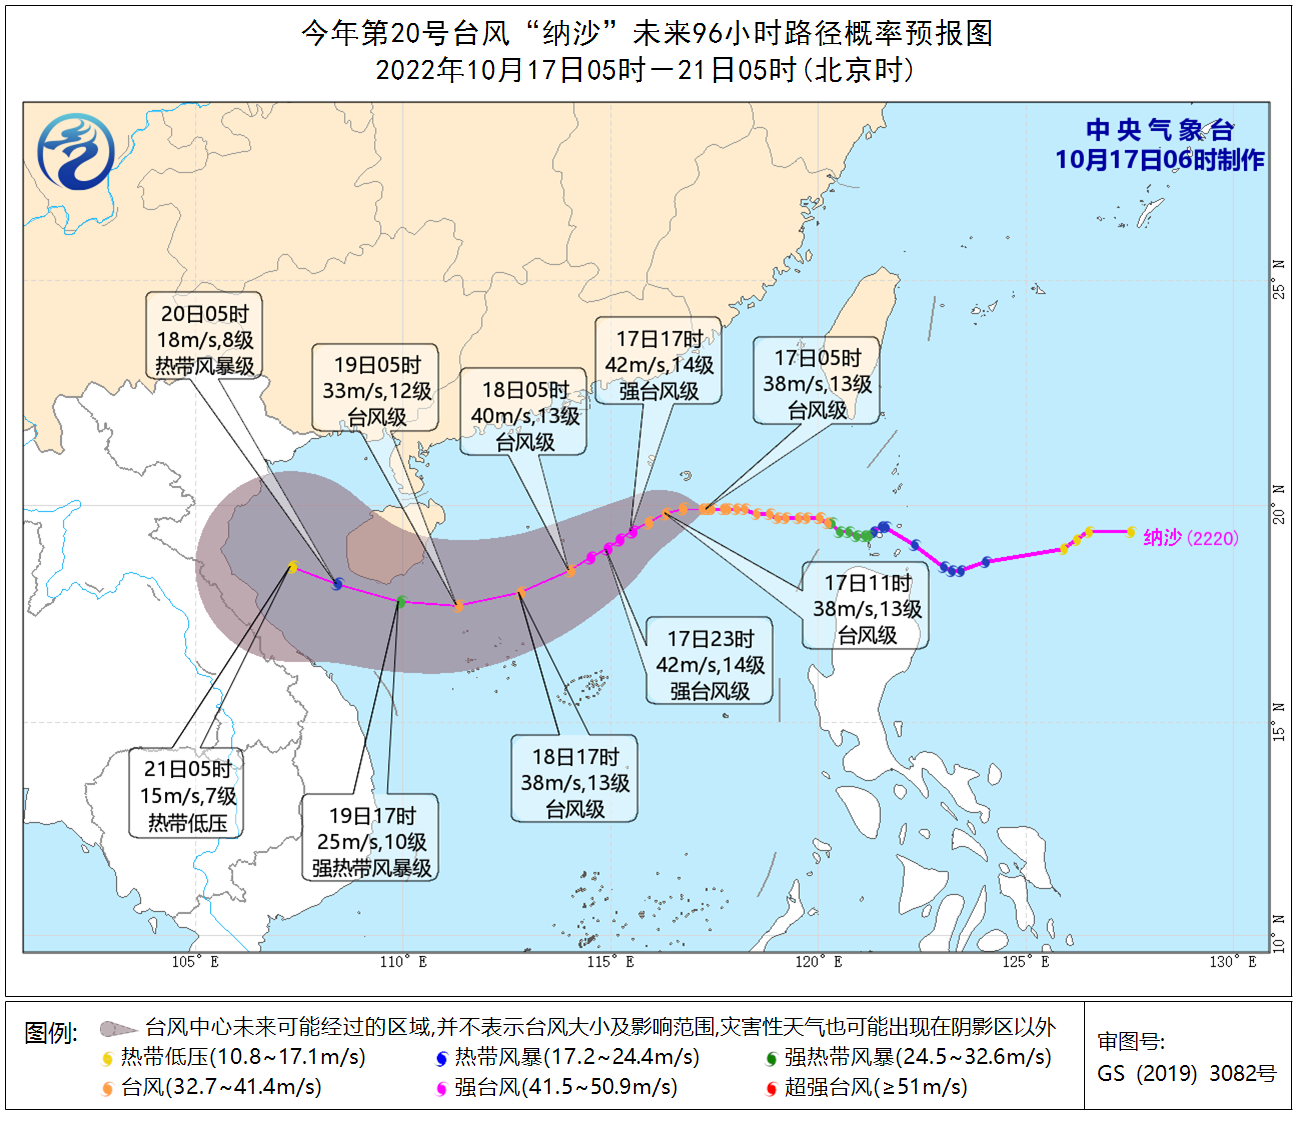 较强冷空气影响中东部地区 台风“纳沙”影响南海北部